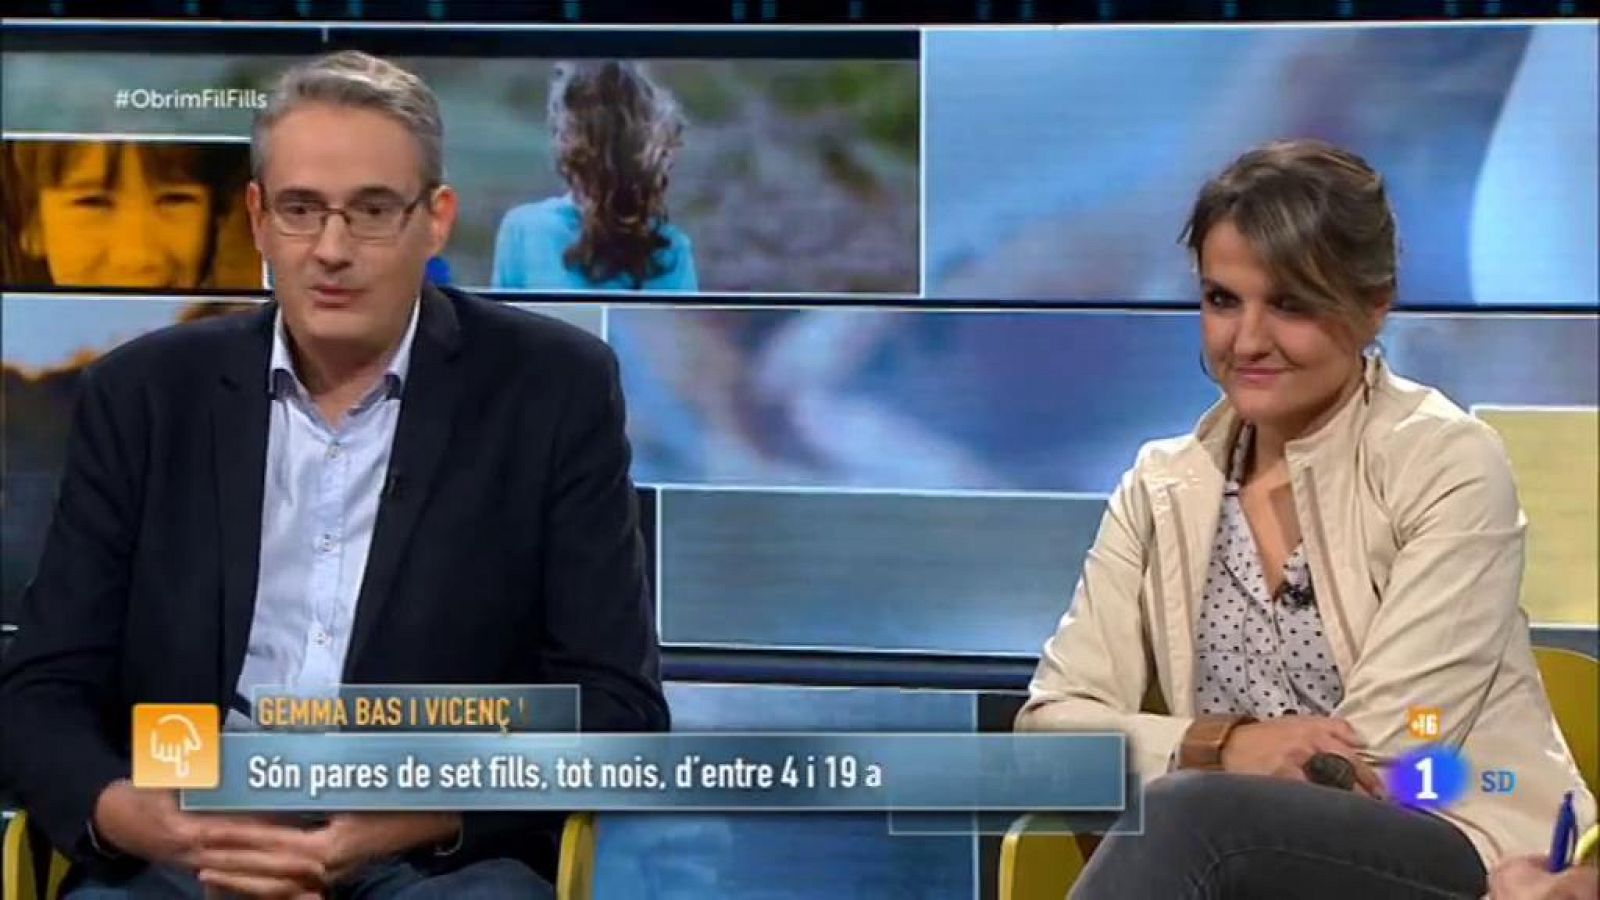 Obrim fil - Una família molt nombrosa i molt feliç - RTVE Catalunya